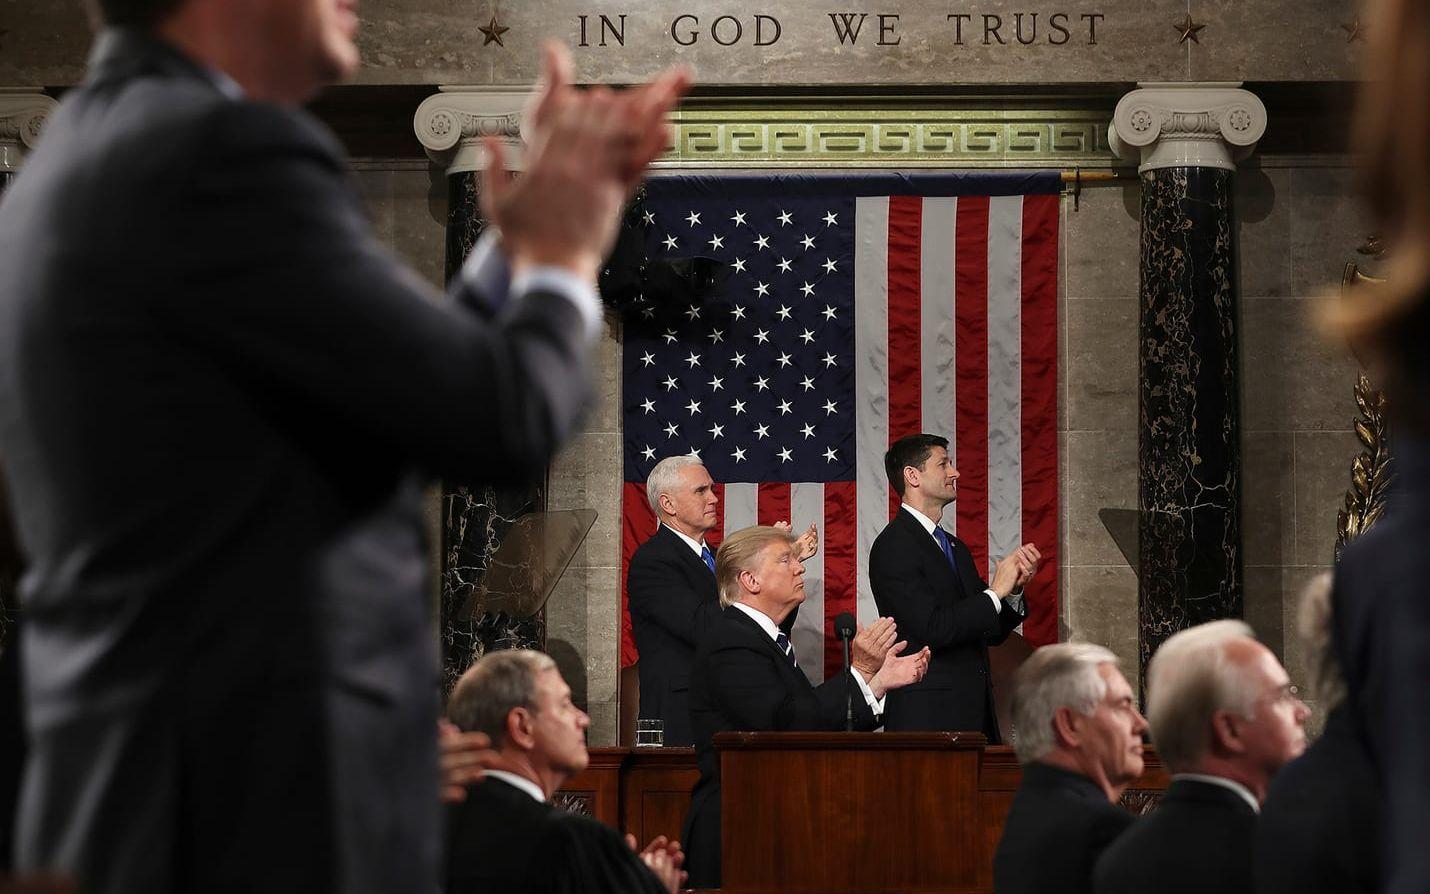 President Donald Trumps tal inför kongressen och nationen uppskattades av amerikanerna, enligt tidiga mätningar. FOTO: AP